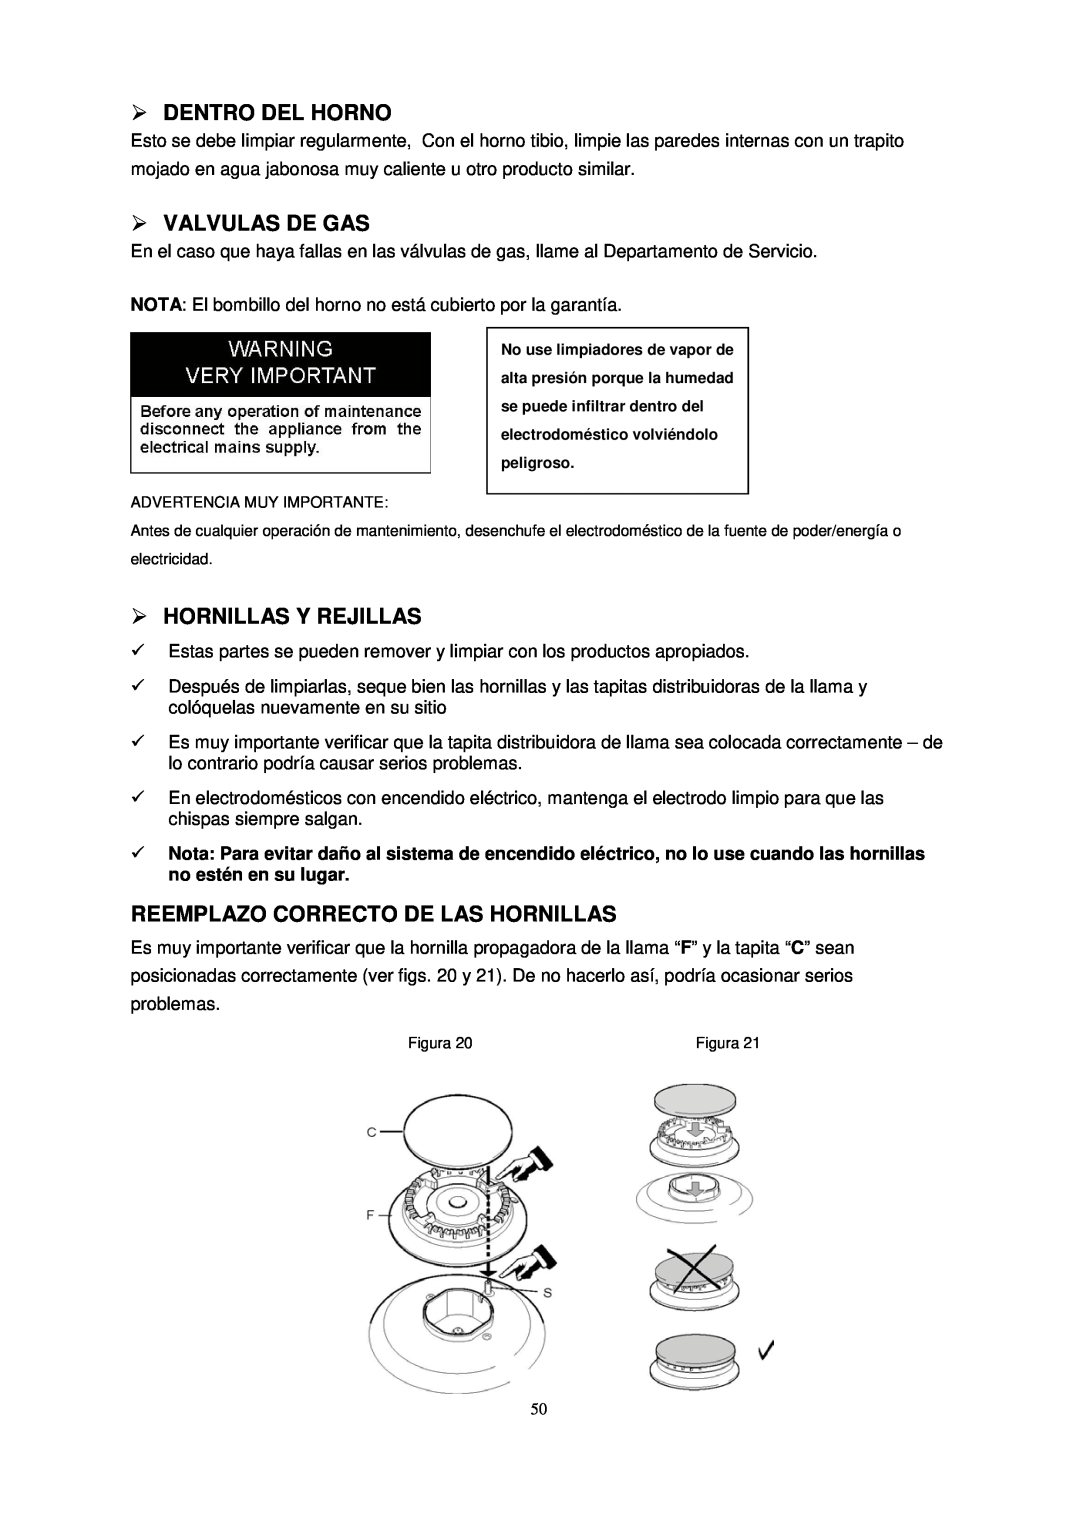 Avanti G2003CSS Dentro Del Horno, Valvulas De Gas, Hornillas Y Rejillas, Reemplazo Correcto De Las Hornillas, Figura 